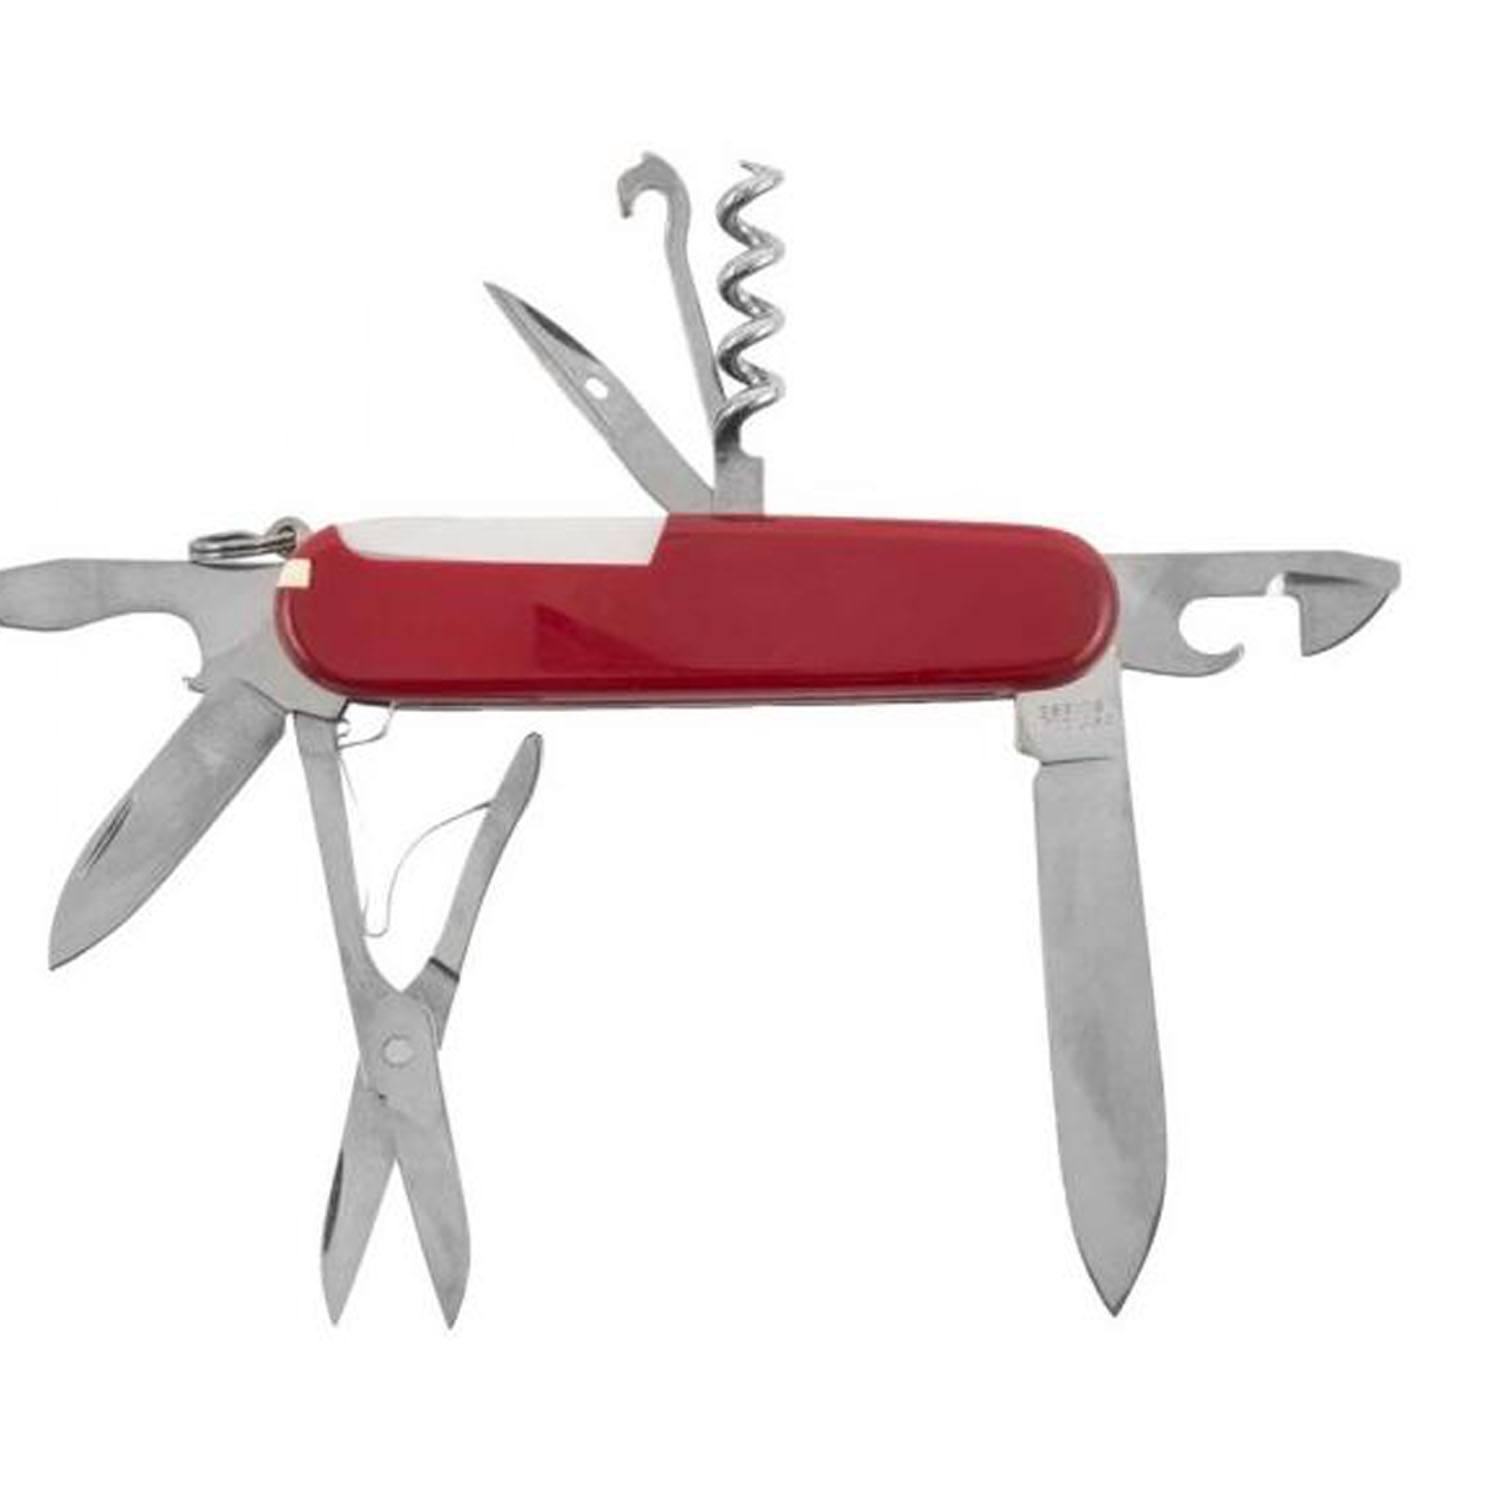 Нож Victorinox Climber, 91 мм, 14 функций красный